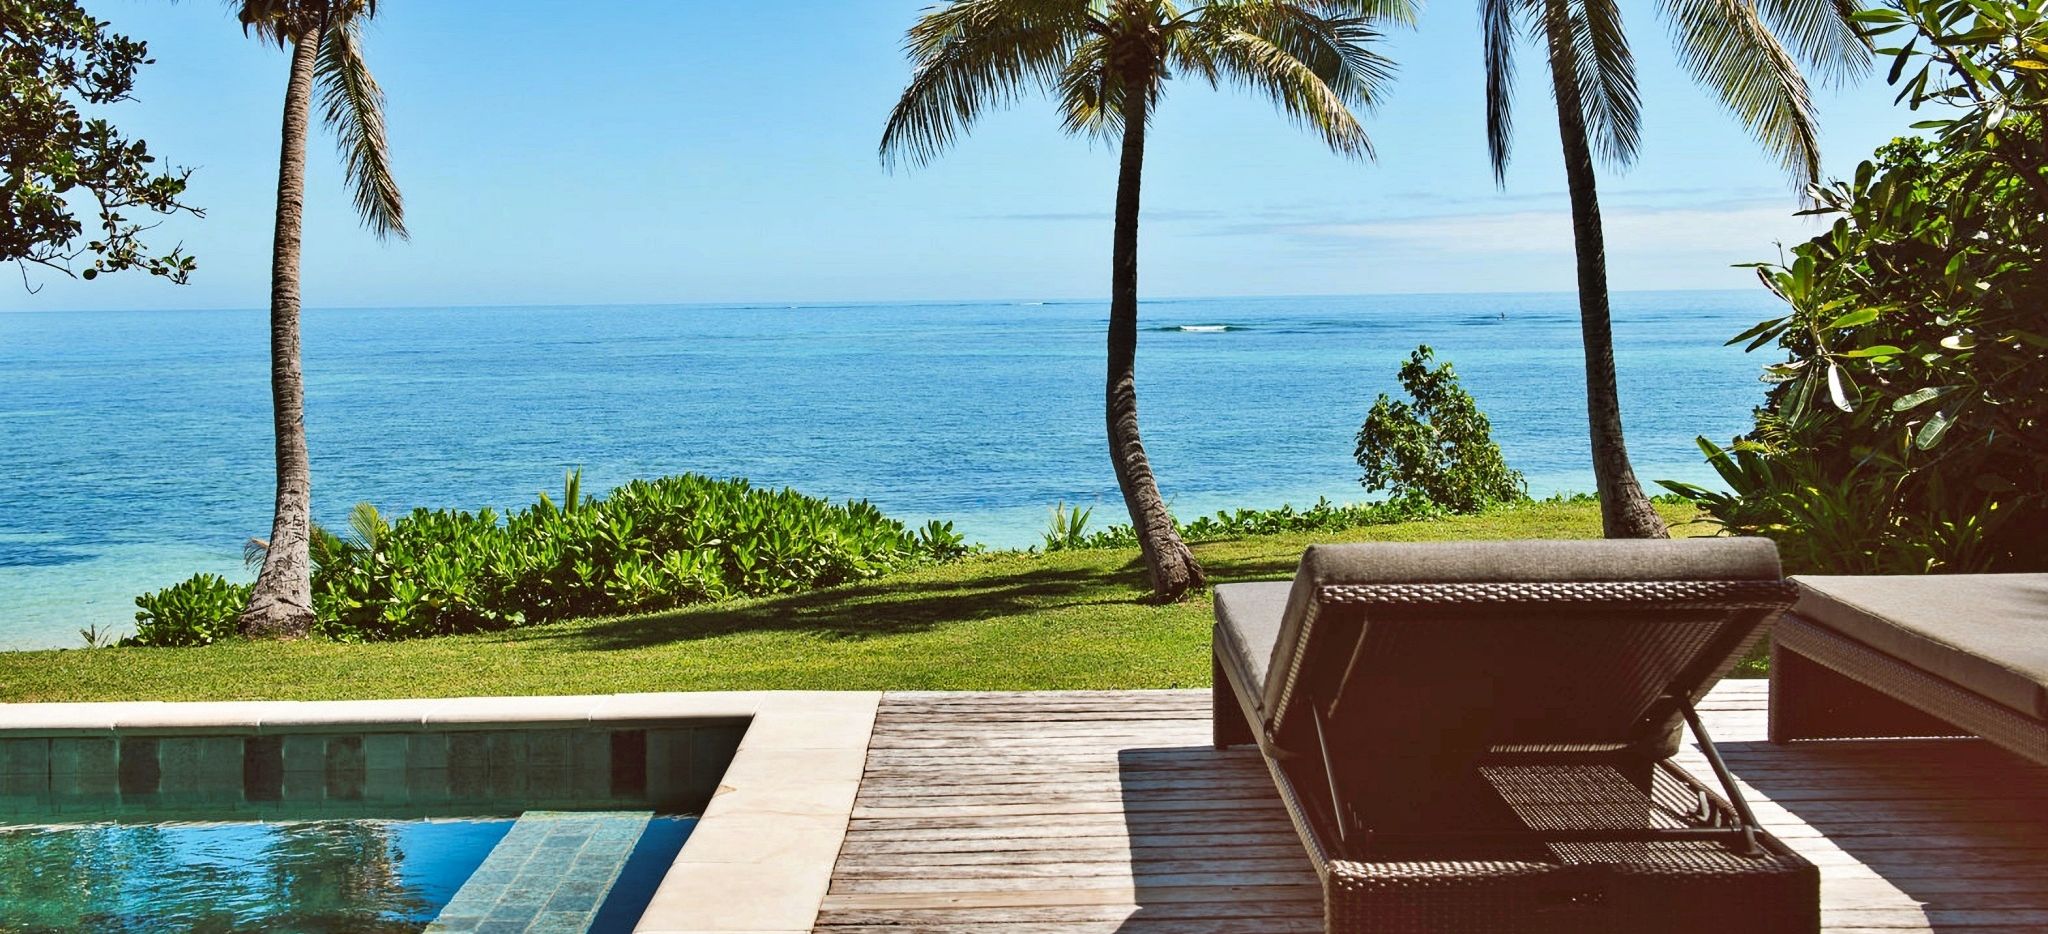 Terrasse mit Sonnenstuhl mit Blick aufs Meer im Hotel Tokoriki, Fiji